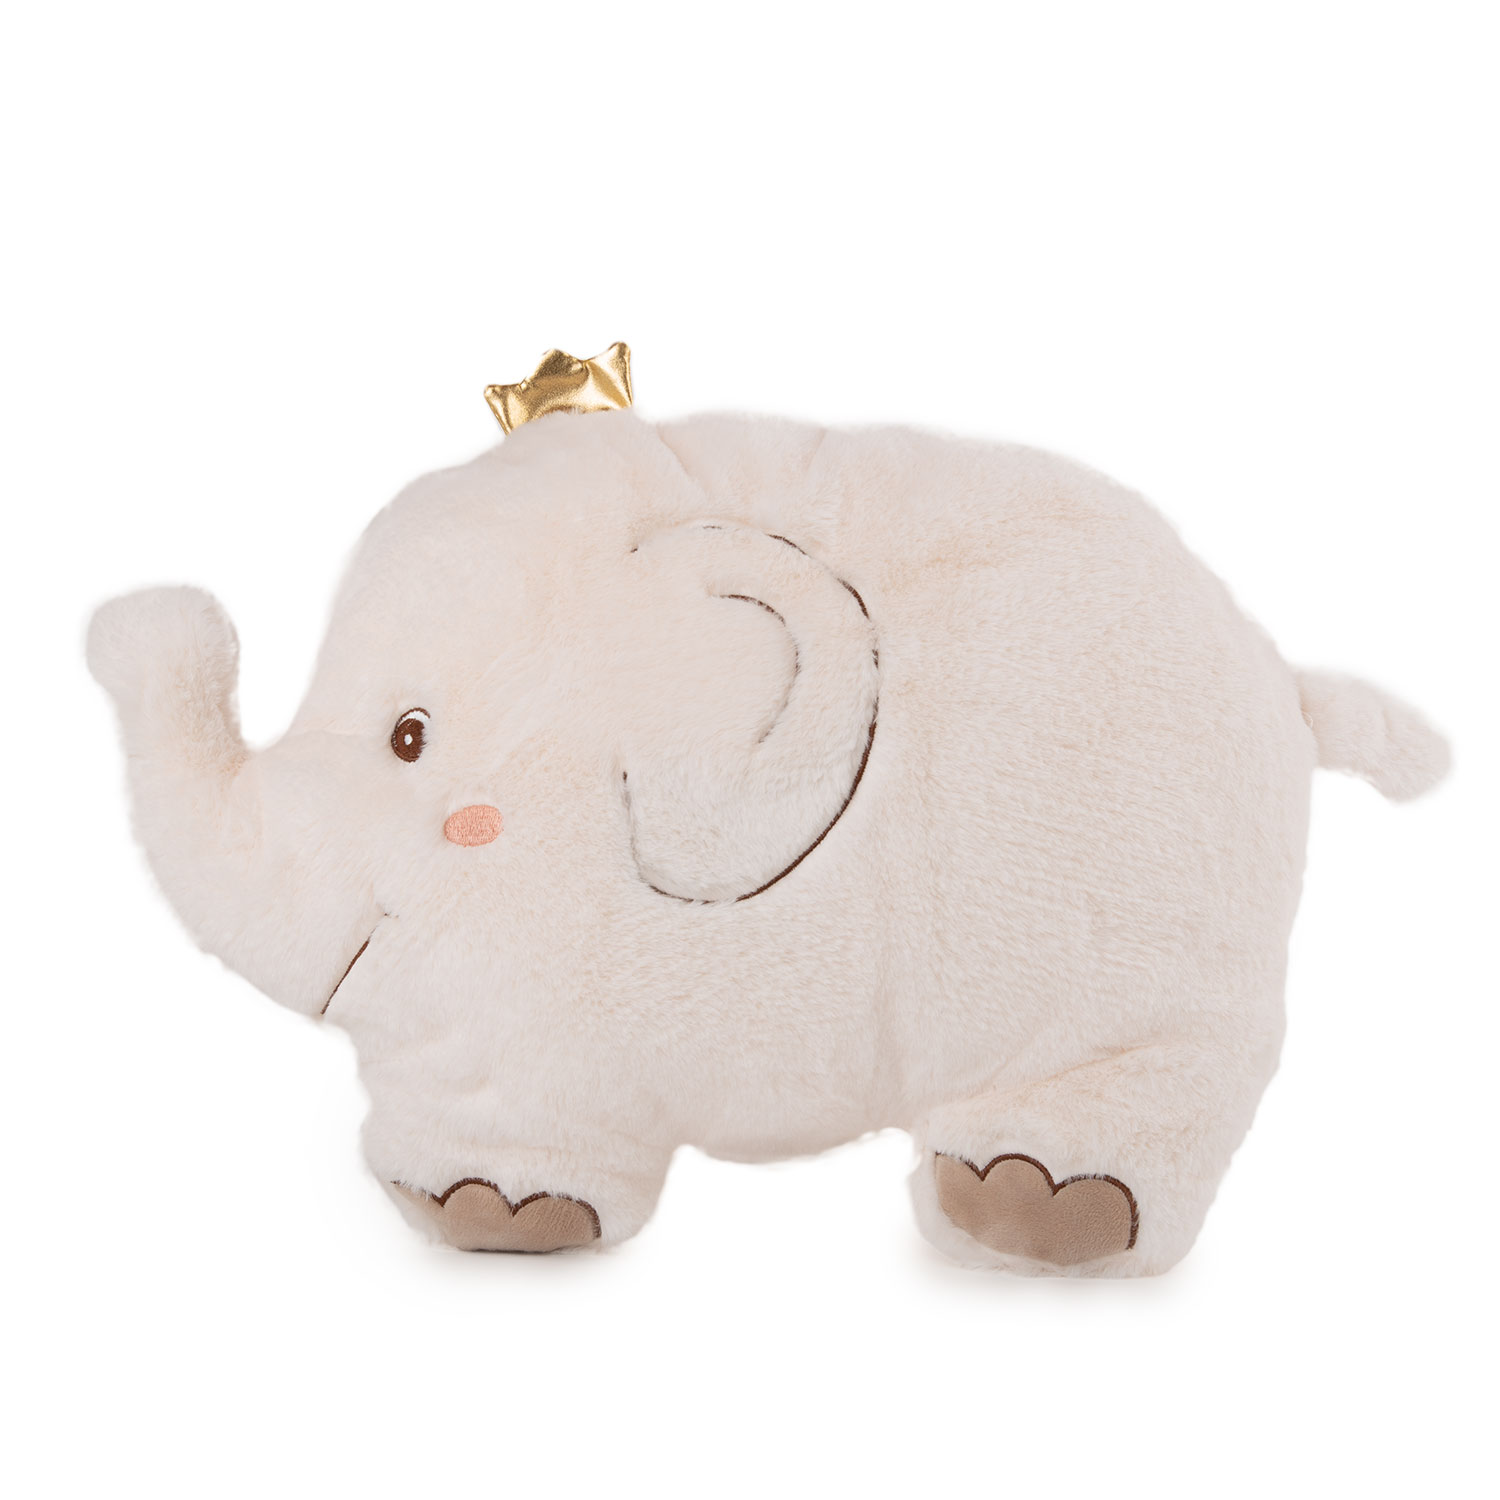 Elephant pillow - White